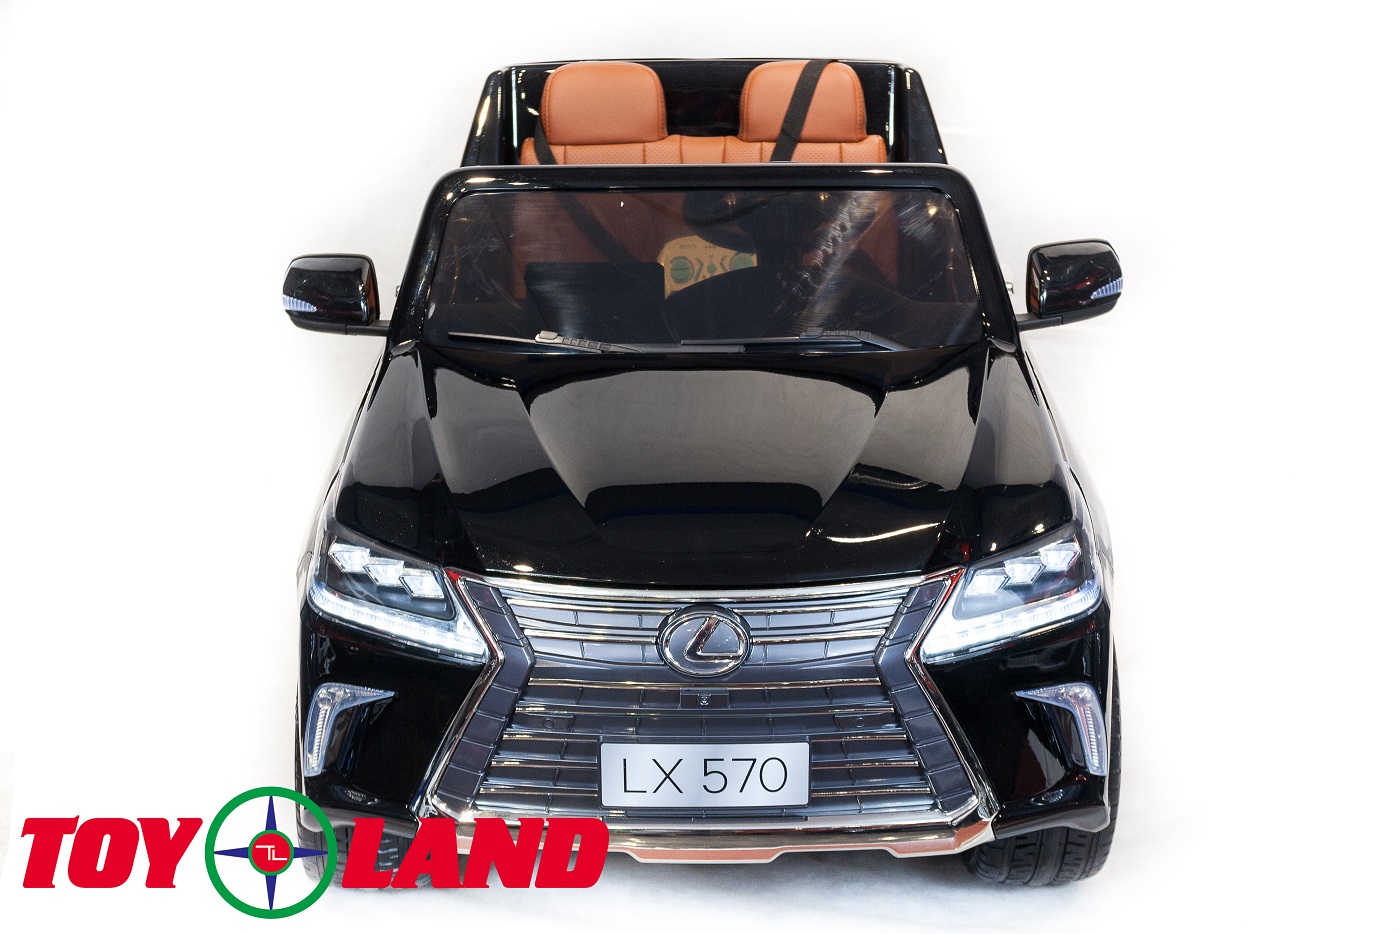 Электромобиль - Lexus LX570, черный, свет и звук  